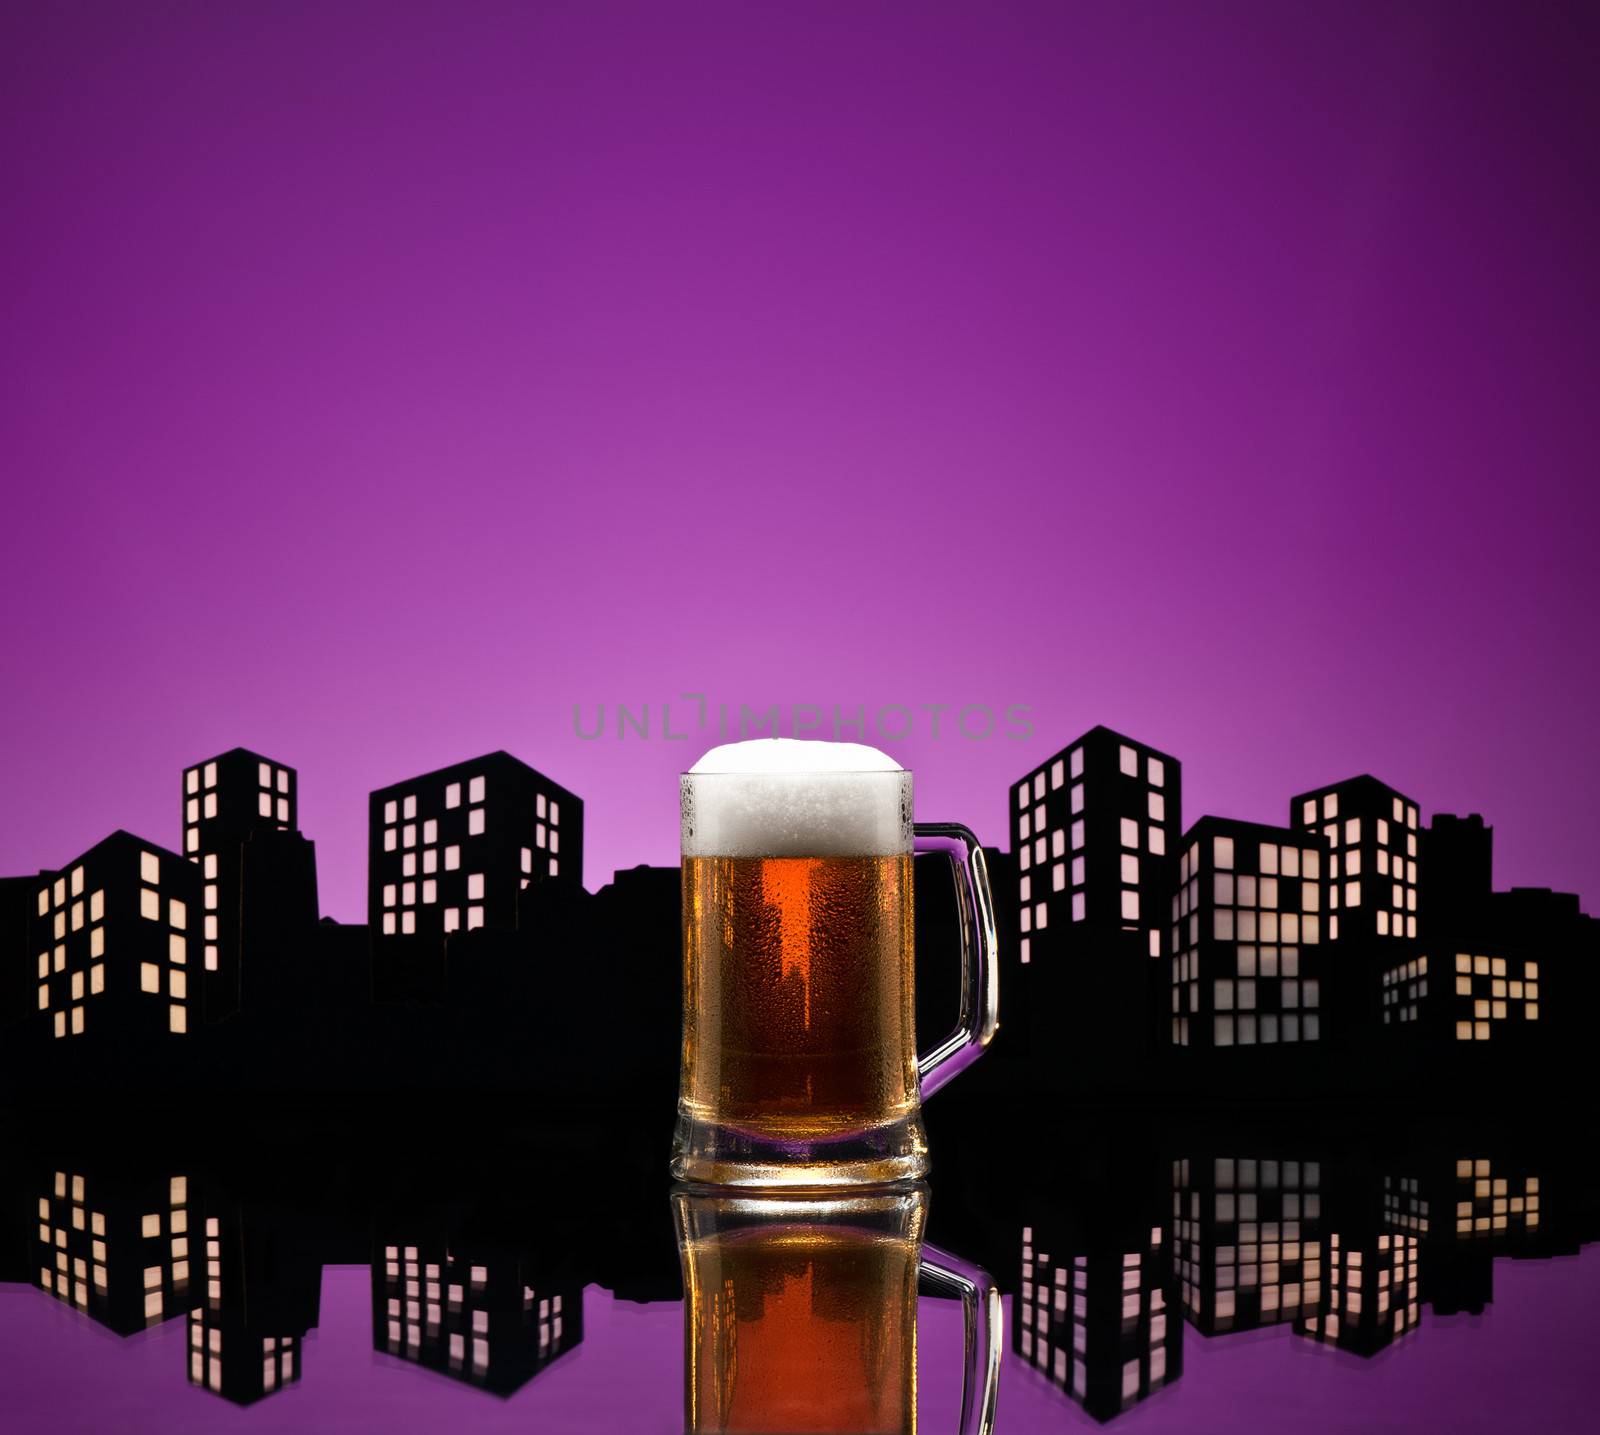 Metropolis lager beer by 3523Studio